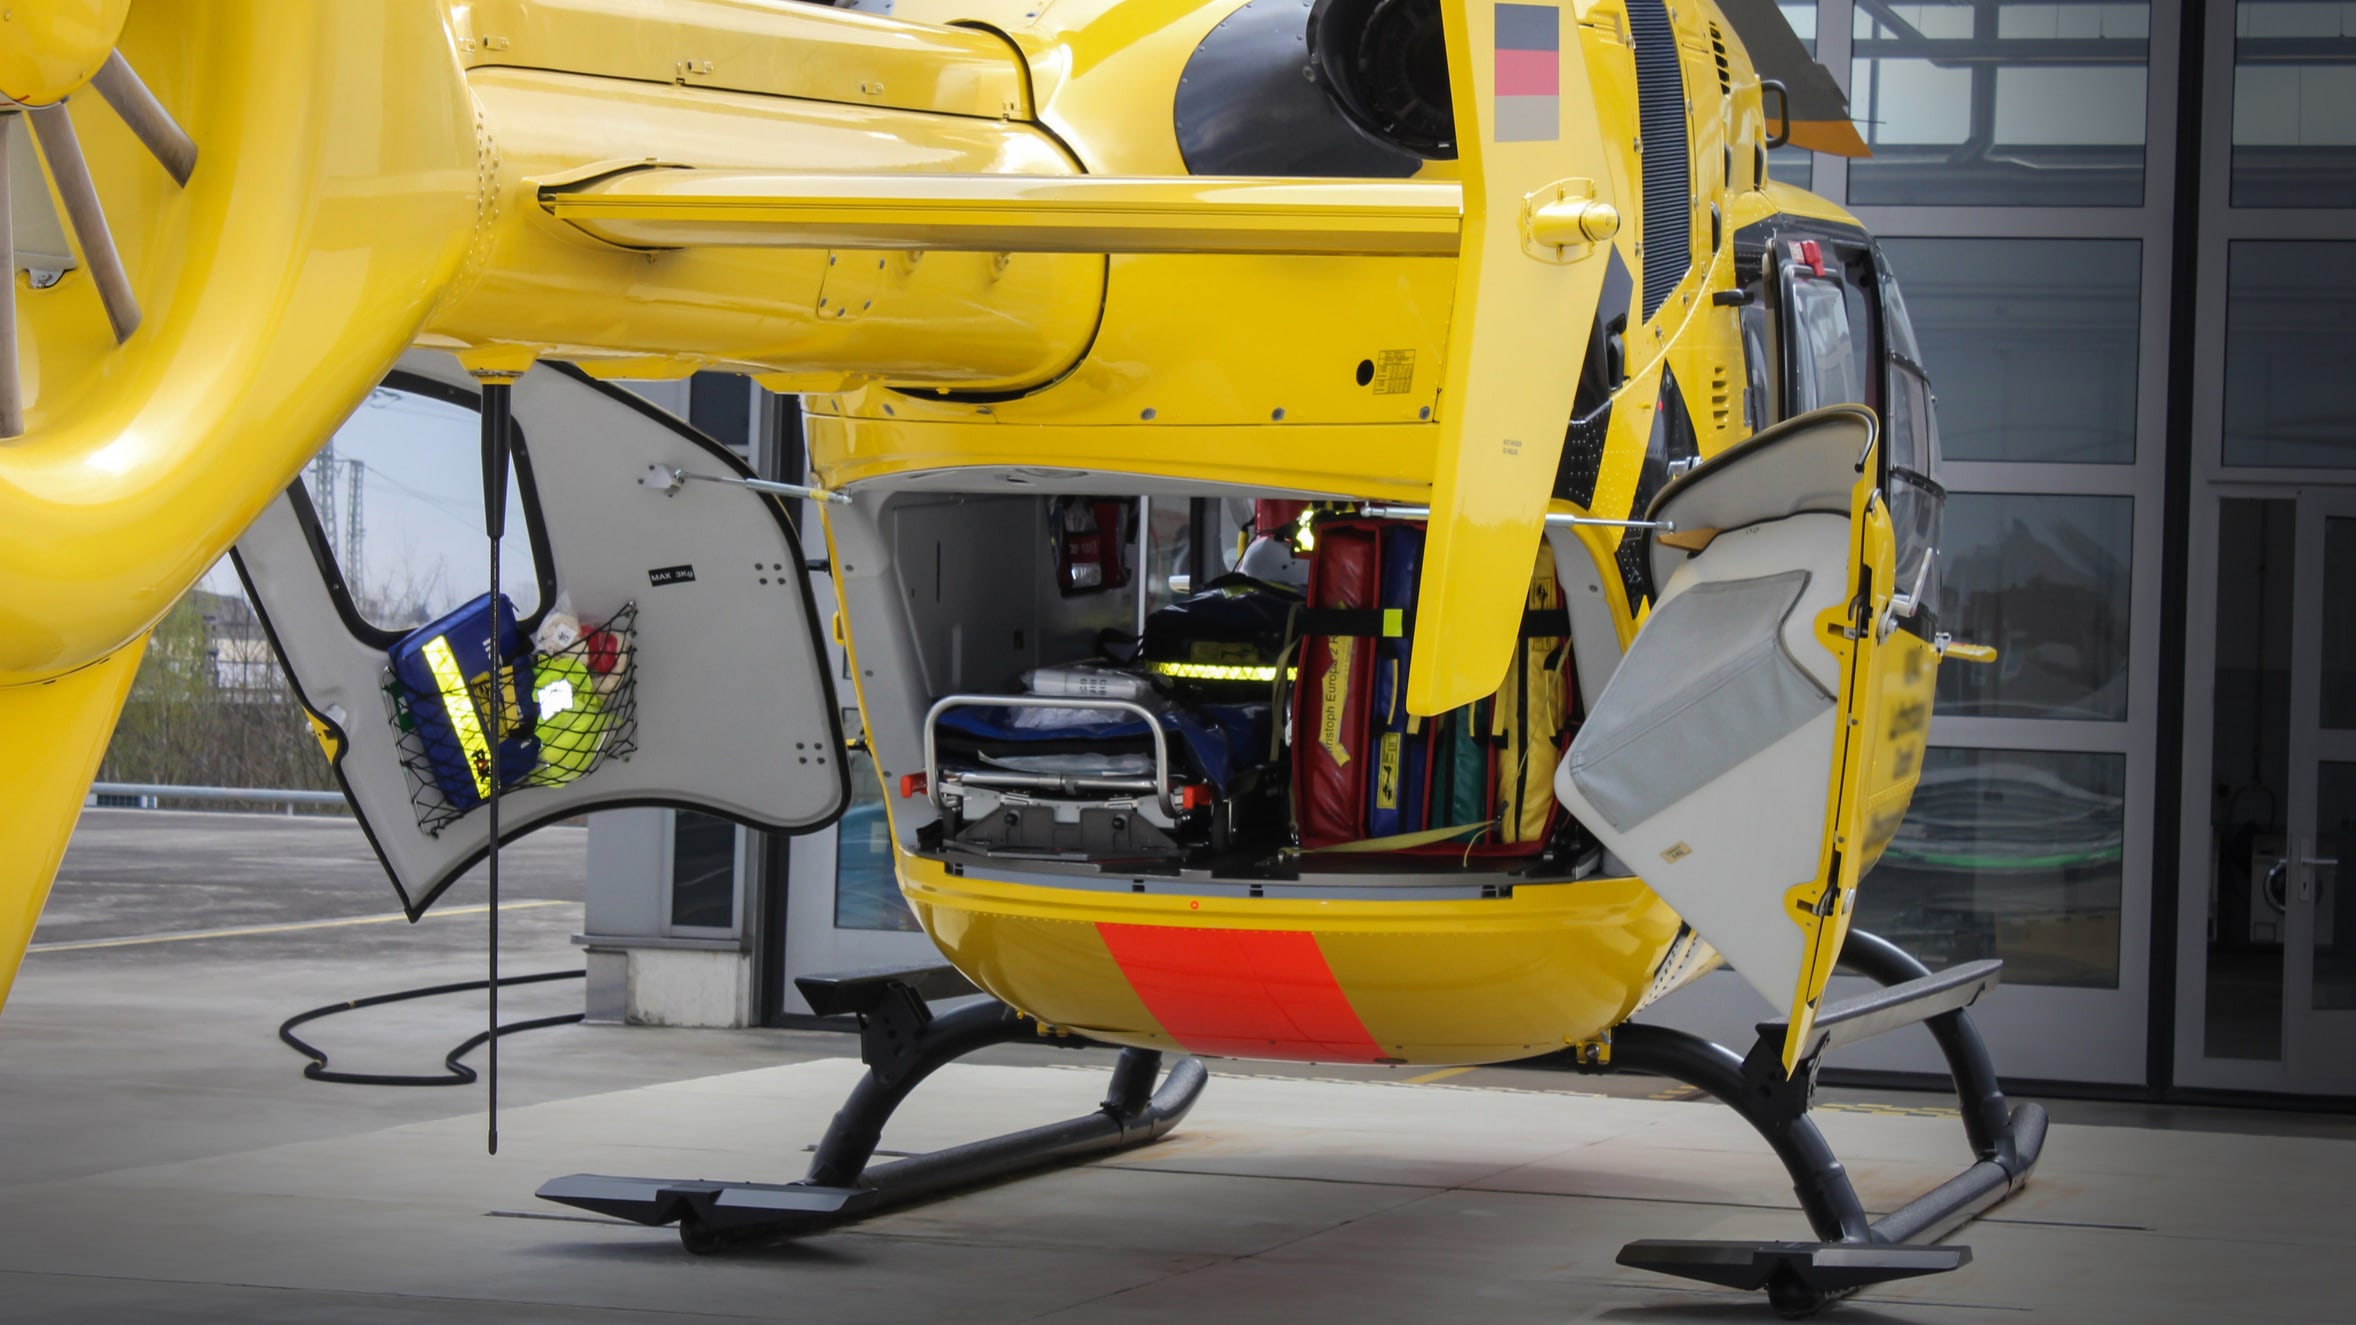 Helikopter mit schwenkbarer Patientenliege